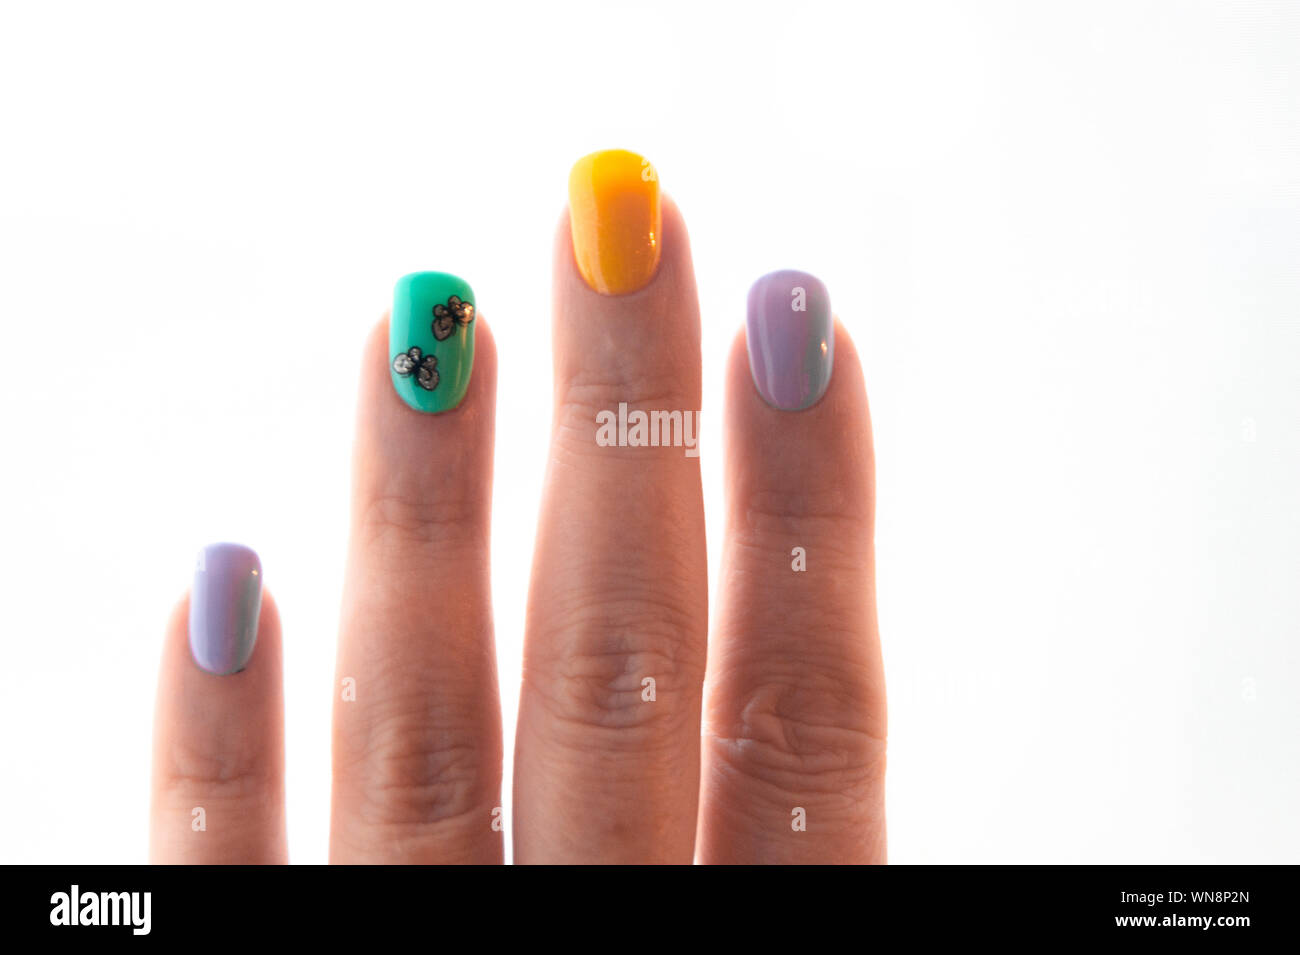 Maniküre - Gel polish Farbe in hellen Sommer Töne, Schmetterlinge sind auf einen Nagel eingefügt - Foto. Schellack, Nägel, Hände. Gesichtspflege, Glamour Stockfoto